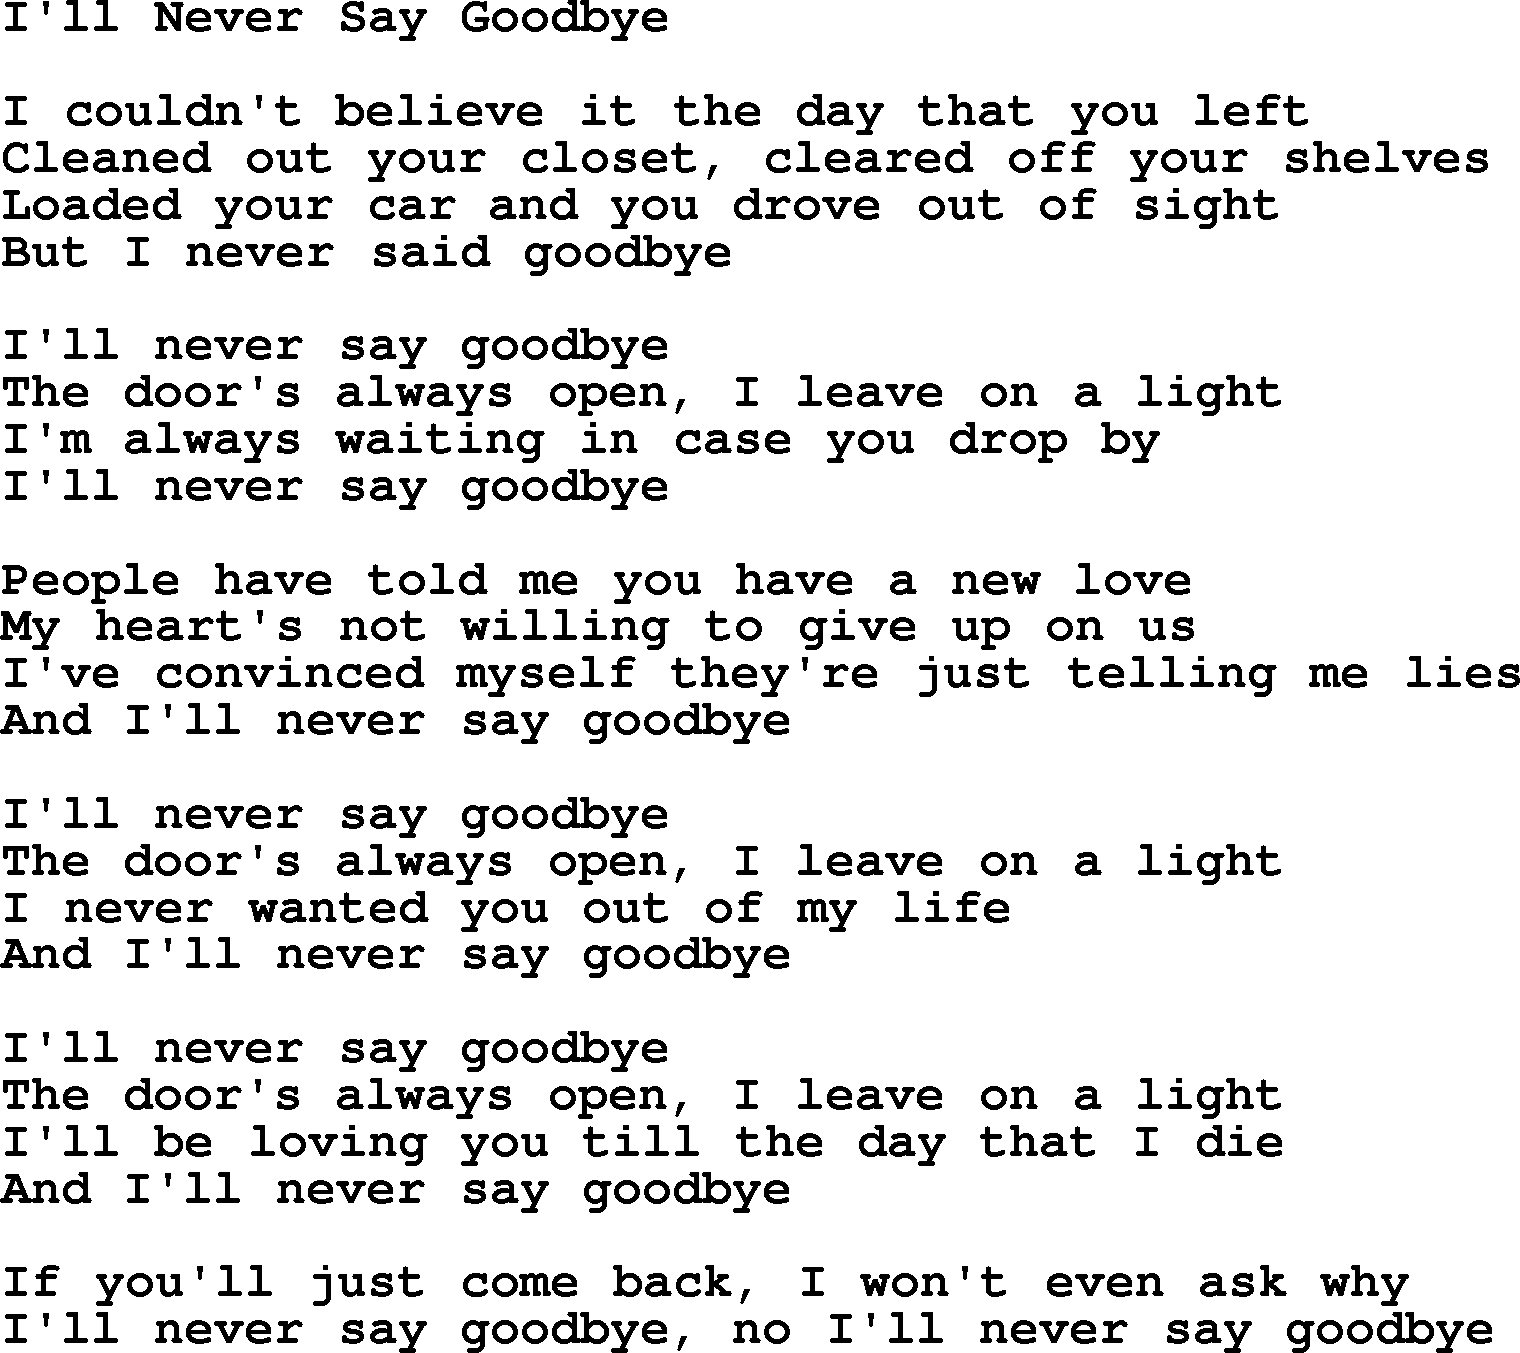 When i say goodbye lyrics